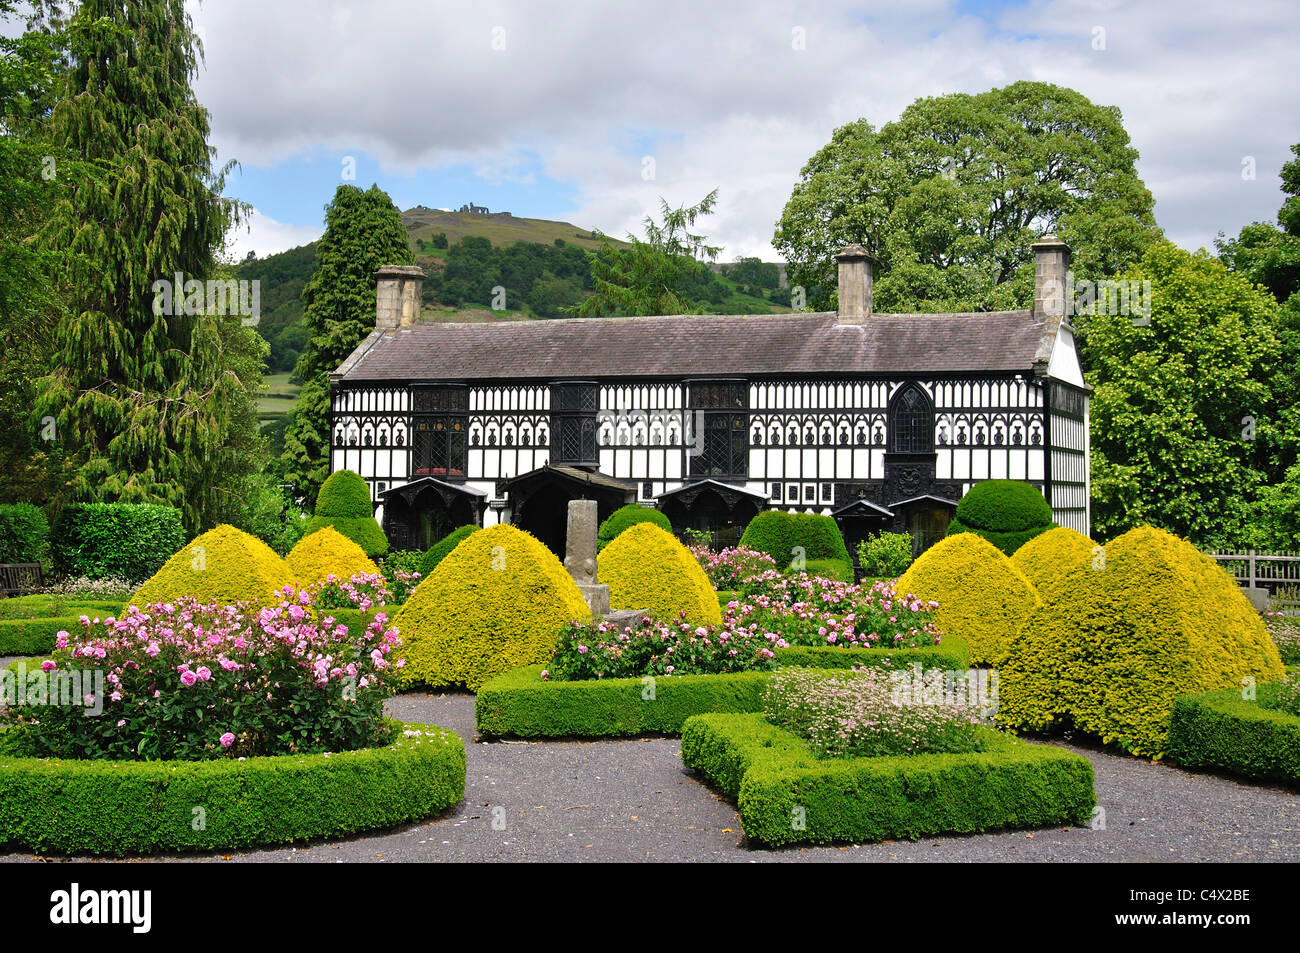 Plas Newydd (ancienne maison de la "Ladies of Llangollen'), Llangollen, Denbighshire (Sir Ddinbych), pays de Galles, Royaume-Uni Banque D'Images